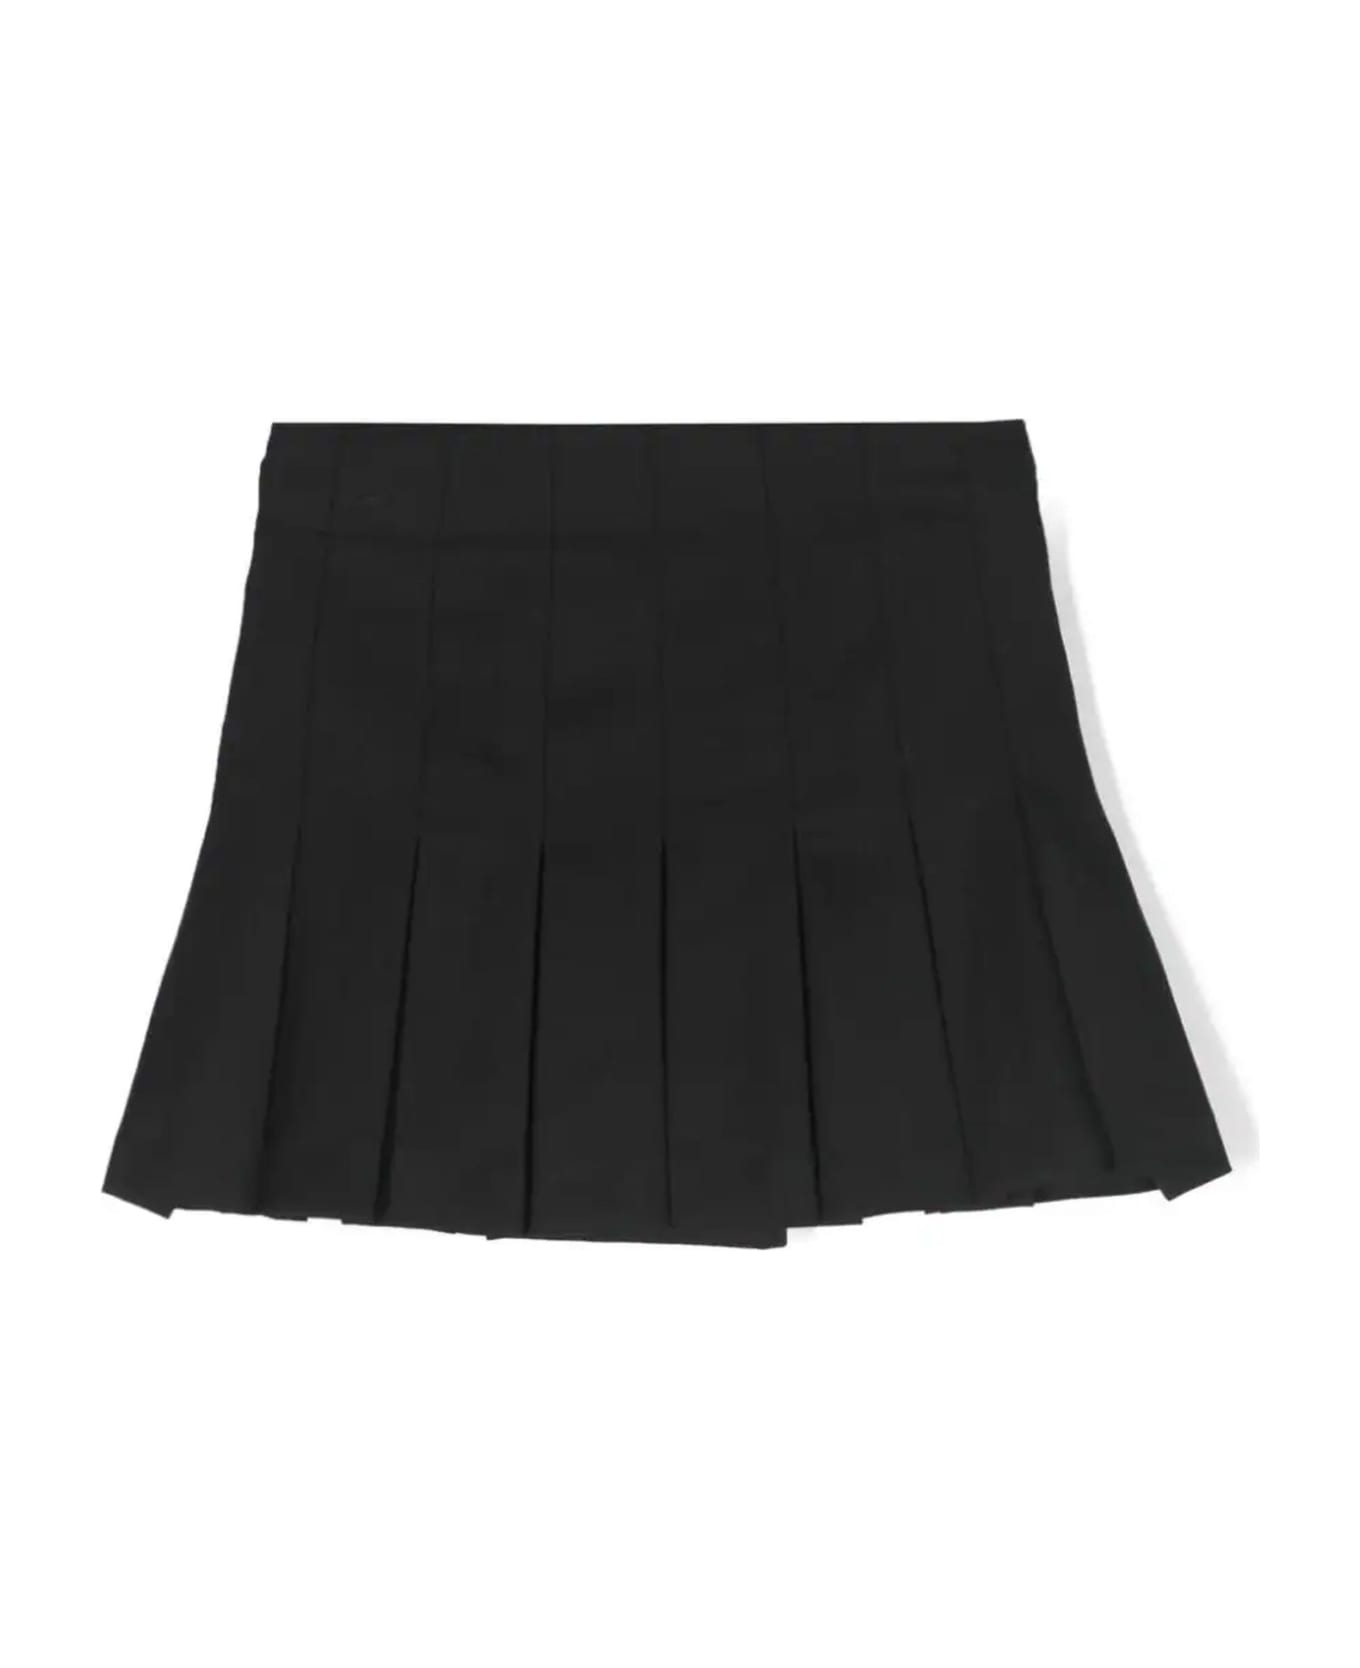 Balmain Skirts Black - Black ボトムス